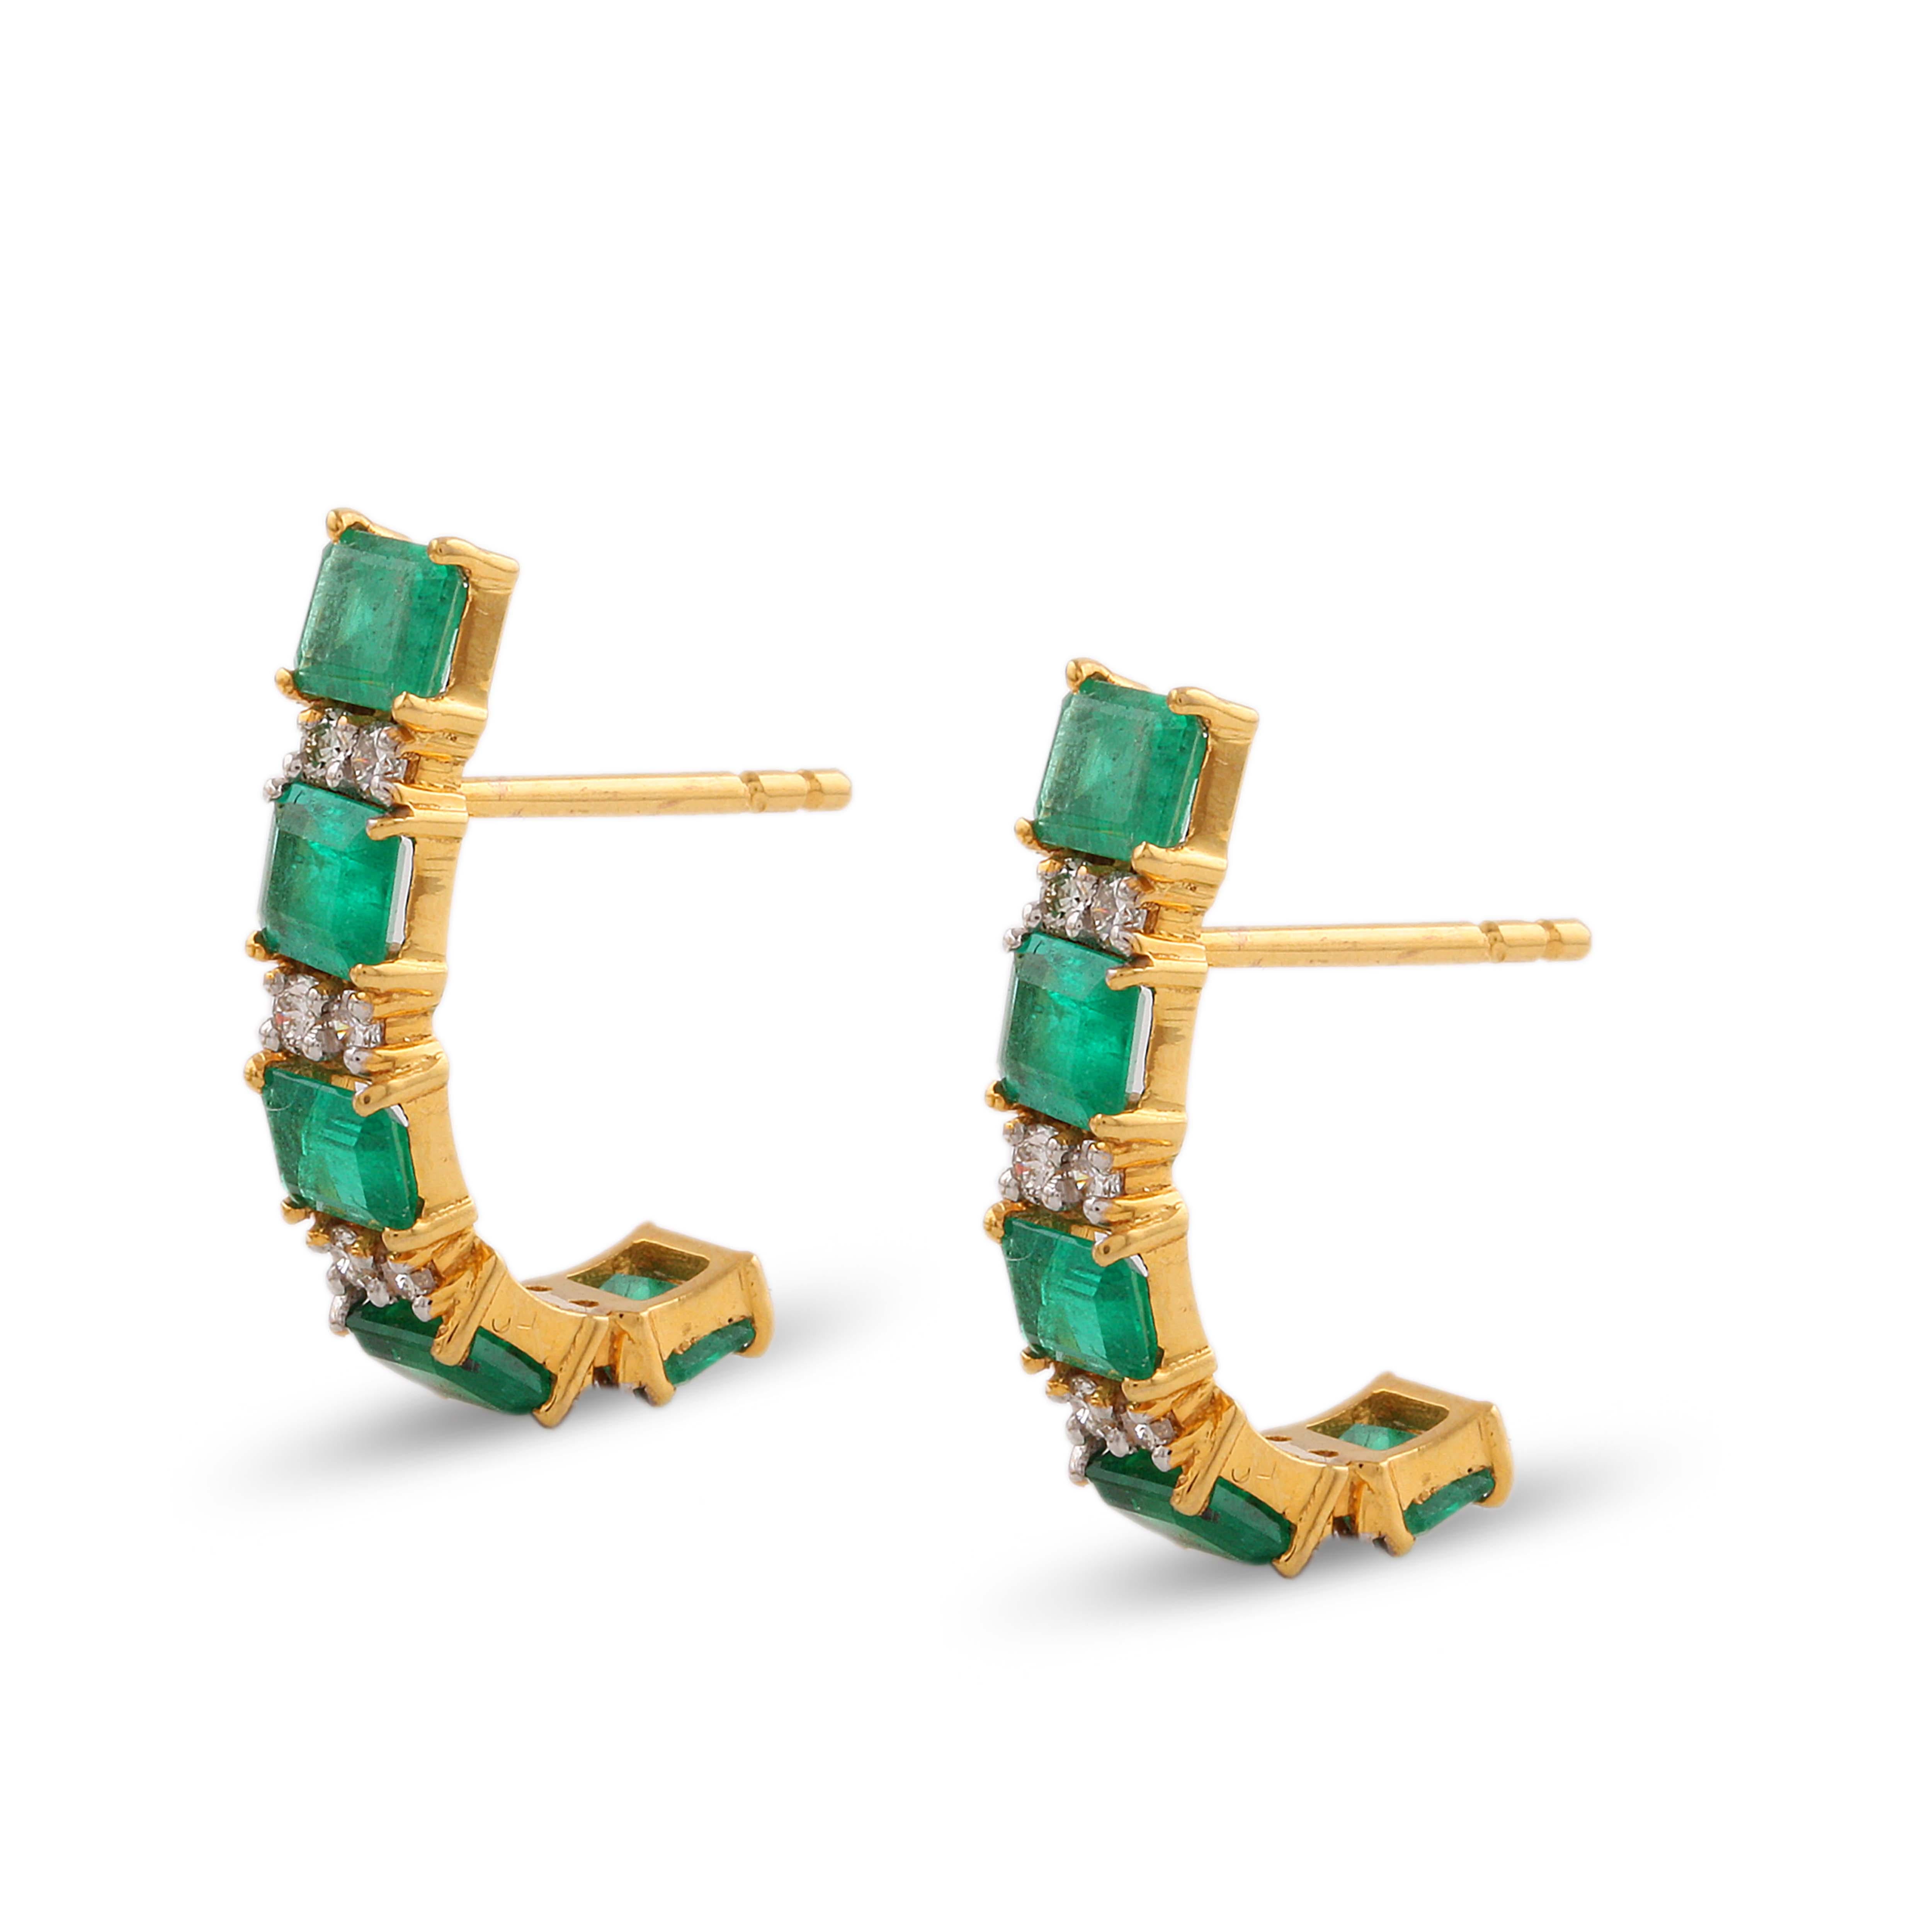 Tresor Beautiful Earring mit 2,40 Karat Smaragd und 0,25 Karat Diamant. Der Ohrring ist eine Ode an die luxuriöse und doch klassische Schönheit mit funkelnden Edelsteinen und femininen Farbtönen. Ihr zeitgemäßes und modernes Design macht sie perfekt